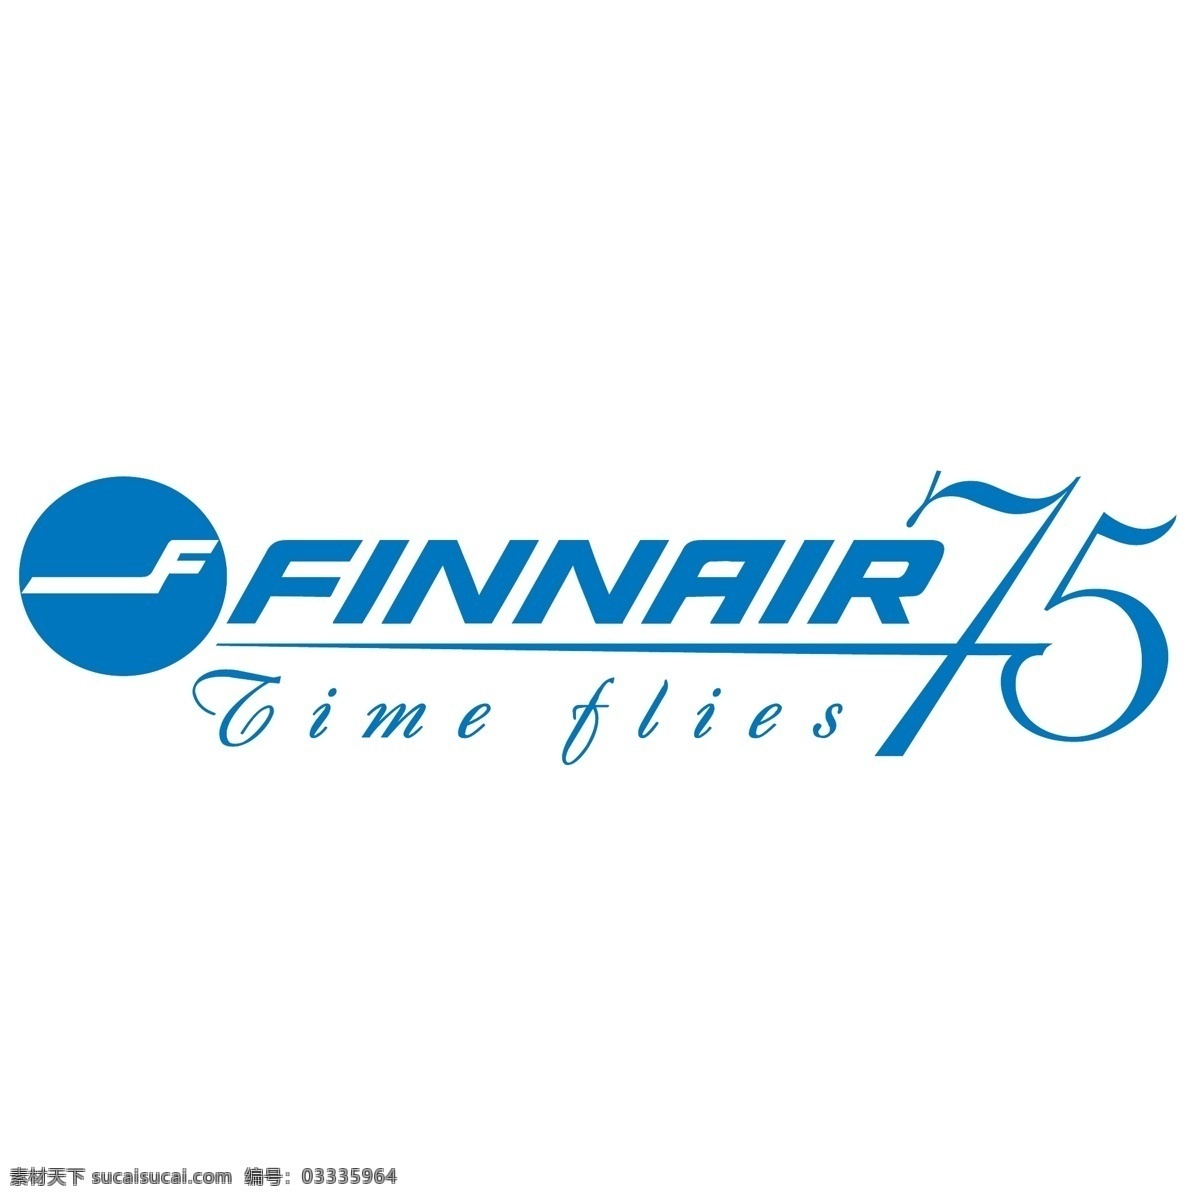 芬兰航空公司 芬兰 航空公司 红色